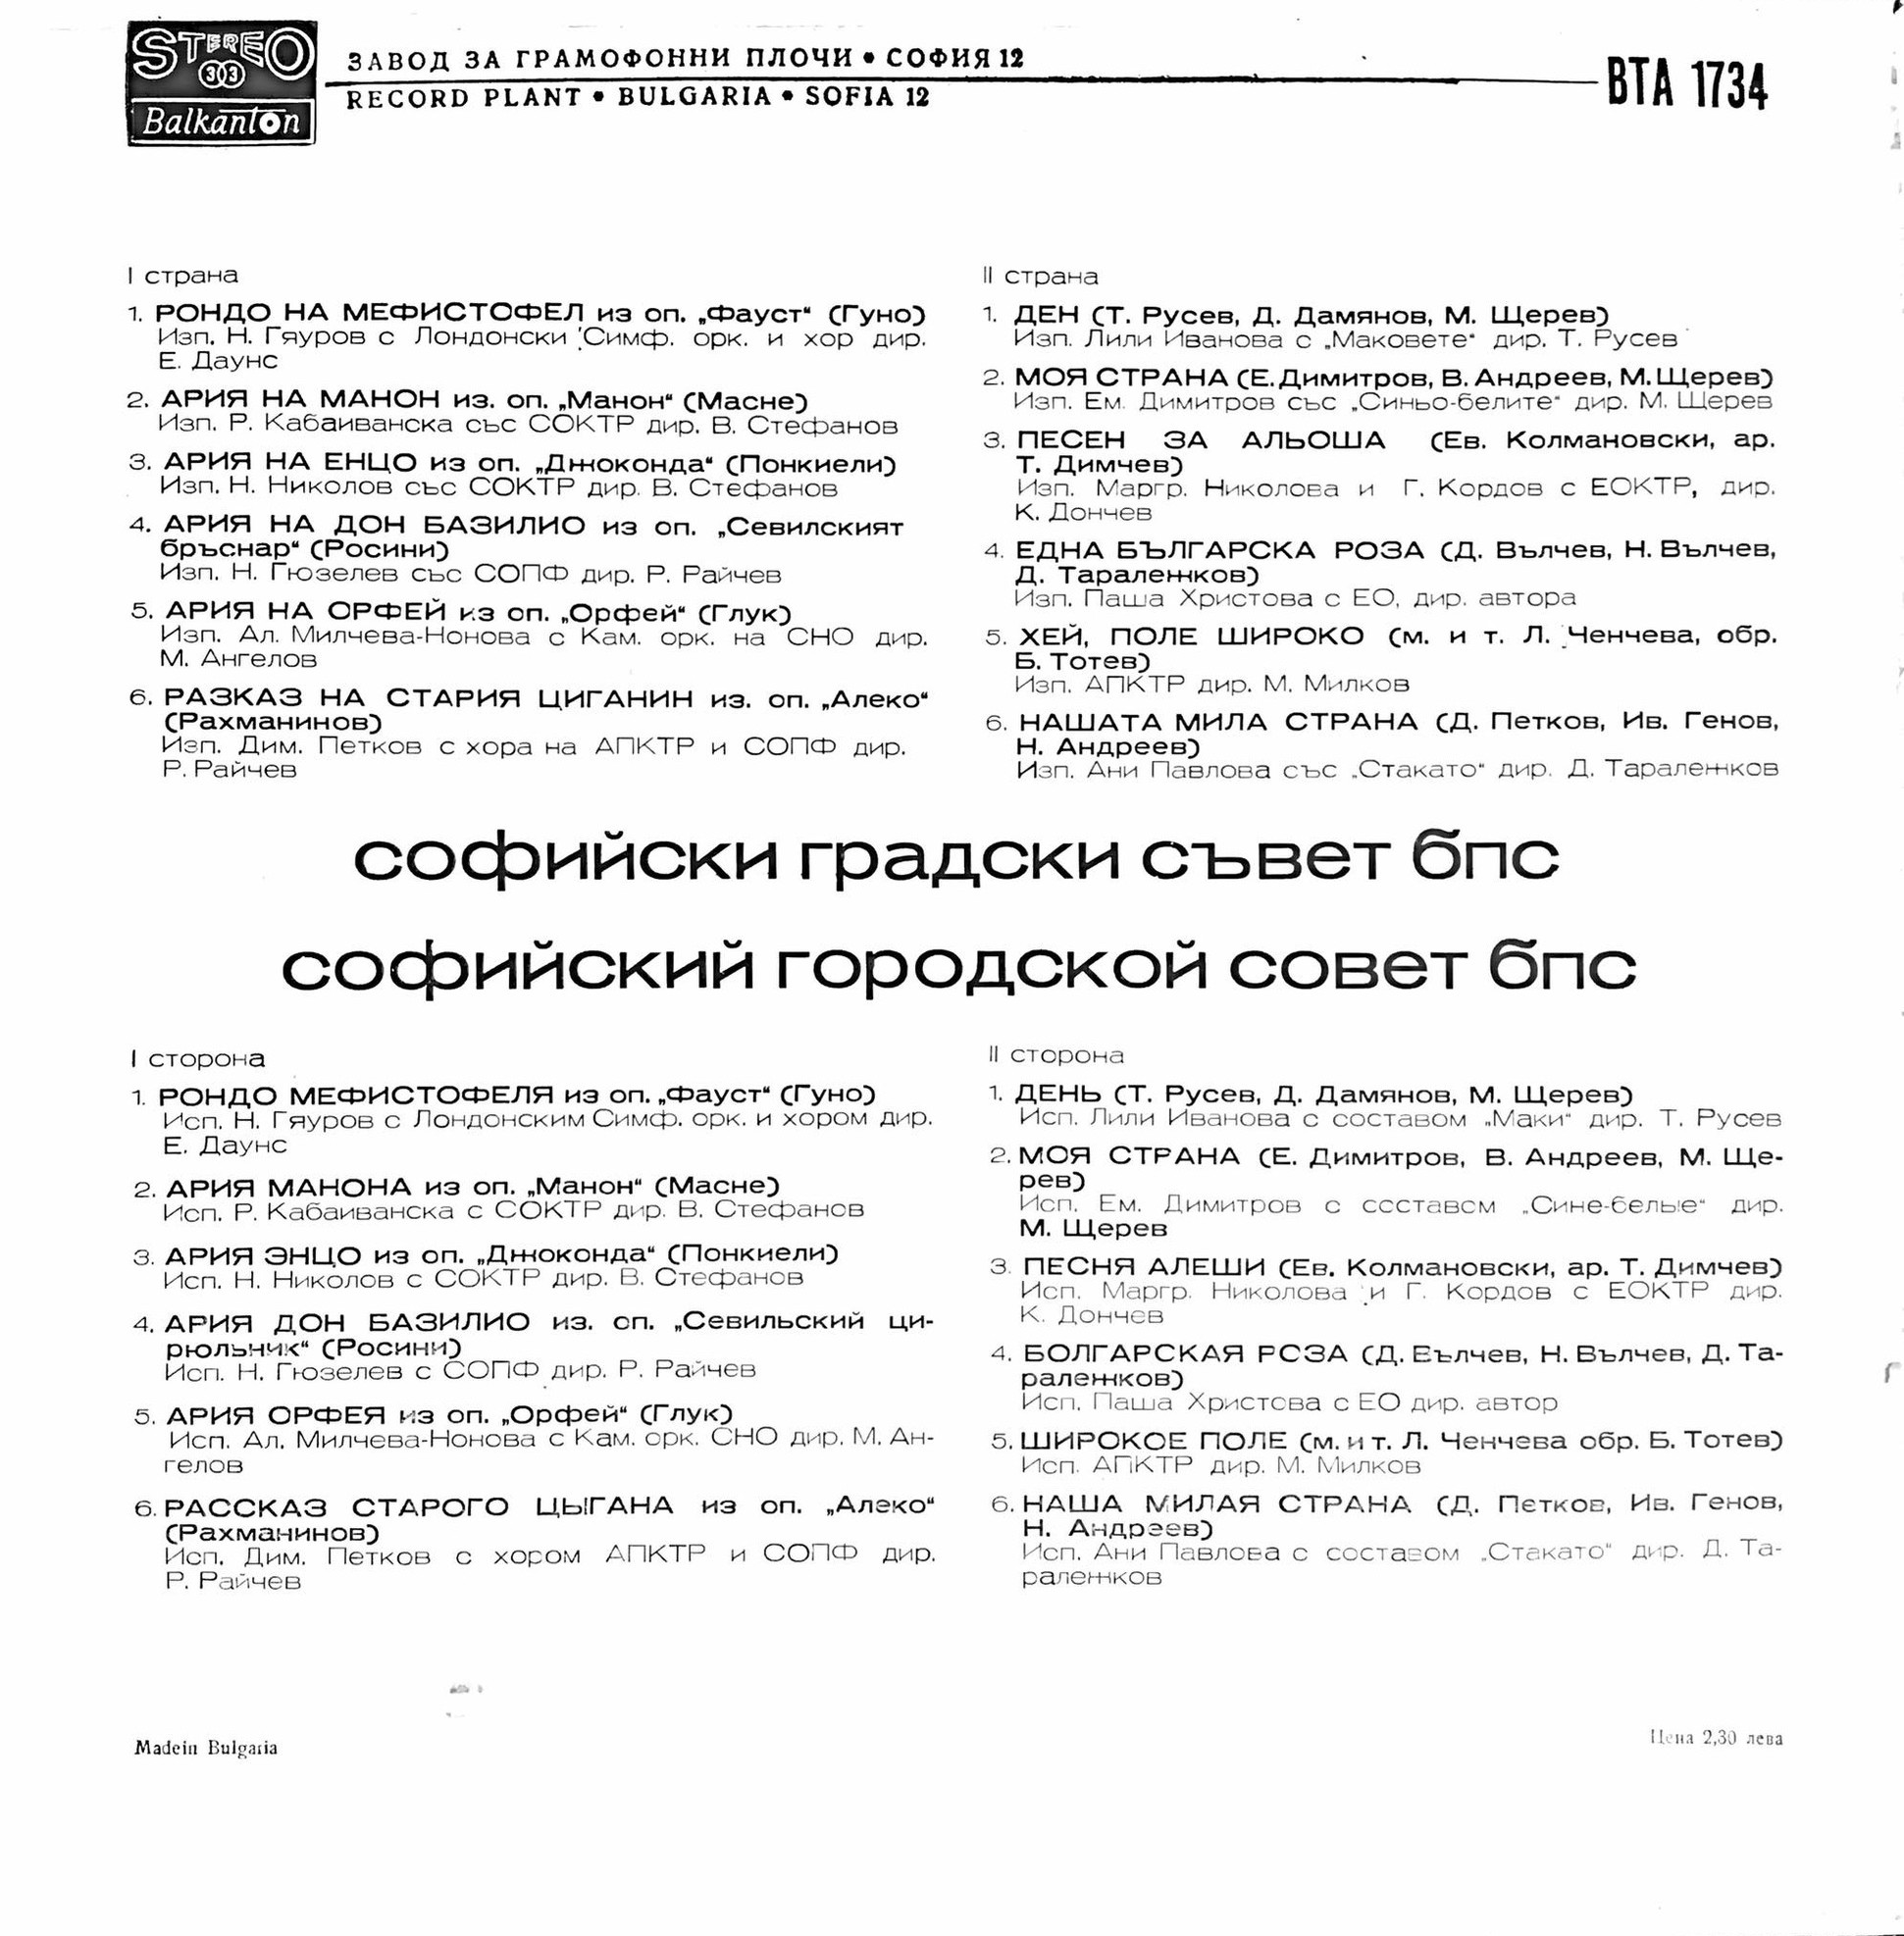 Софийски градски съвет на българските професионални съюзи